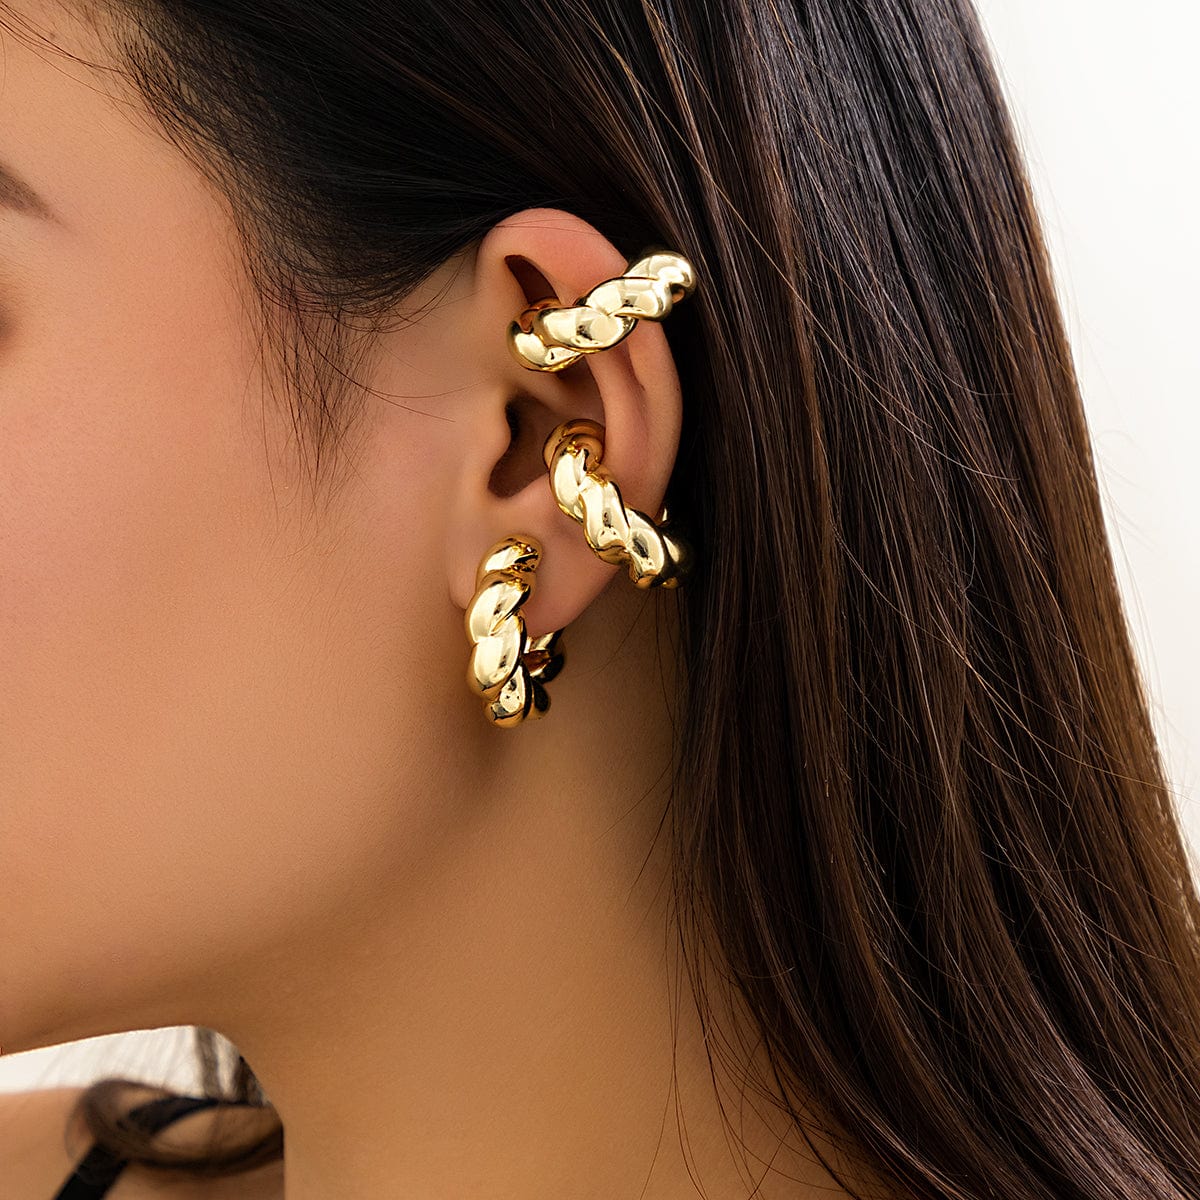 Chic Gold Silver Plated Twisted Ear Cuff Earrings - ArtGalleryZen